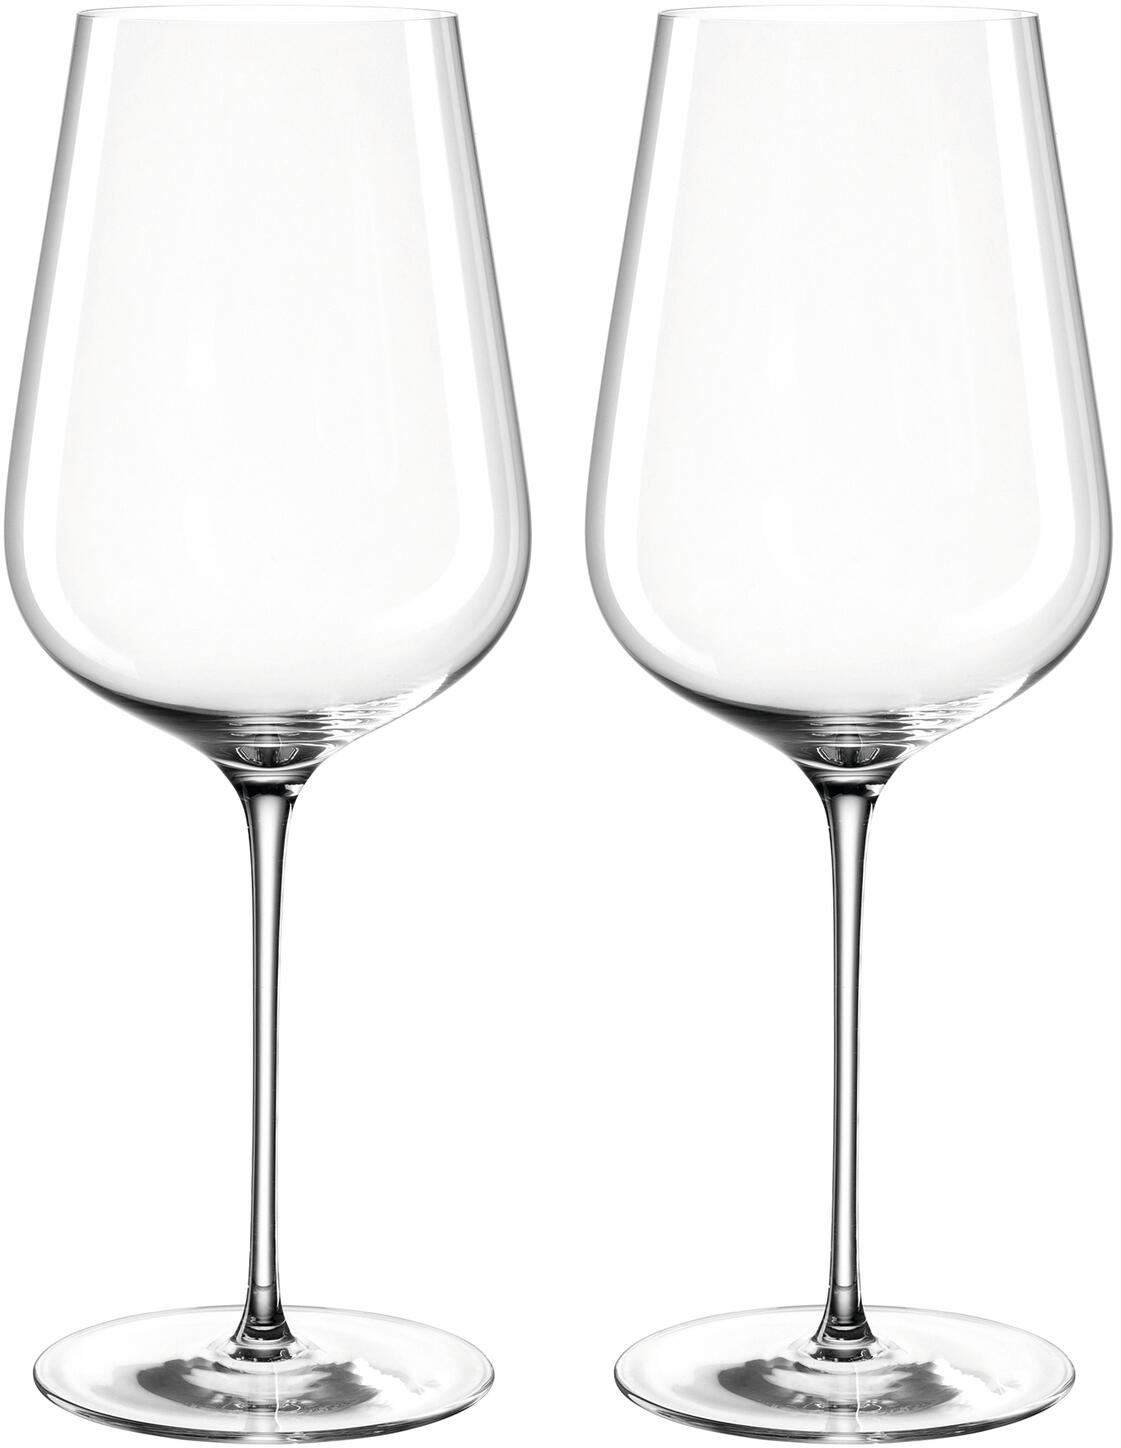 Wein-Glas mit gezogenem Stiel Wein Kelchgläser-Set 740 ml Leonardo Brunelli Rotwein-Gläser 2er Set spülmaschinenfeste Rotwein-Kelche 066420 